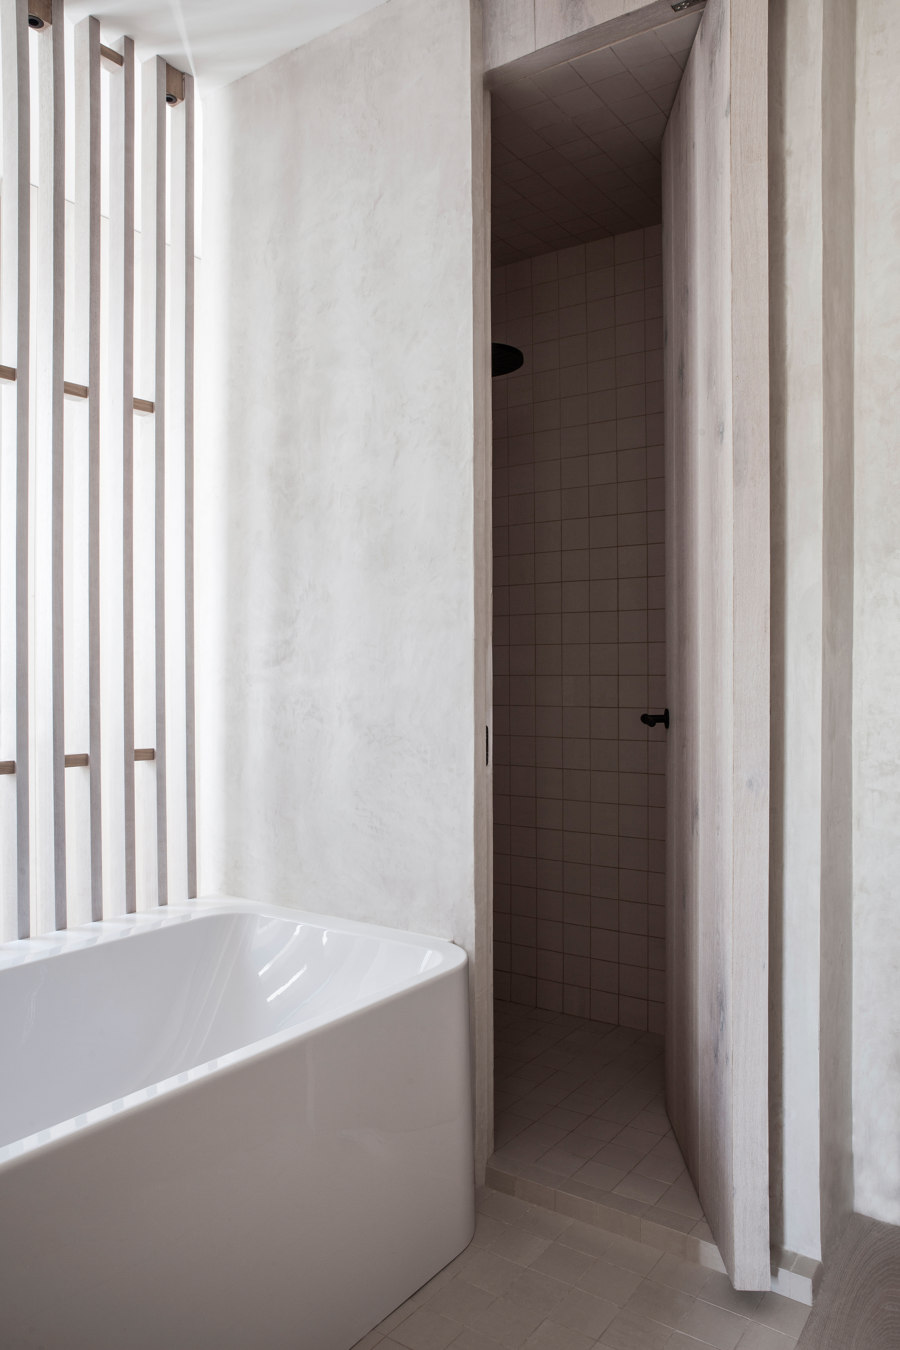 Blanca de Navarra by OOAA Arquitectura | Living space